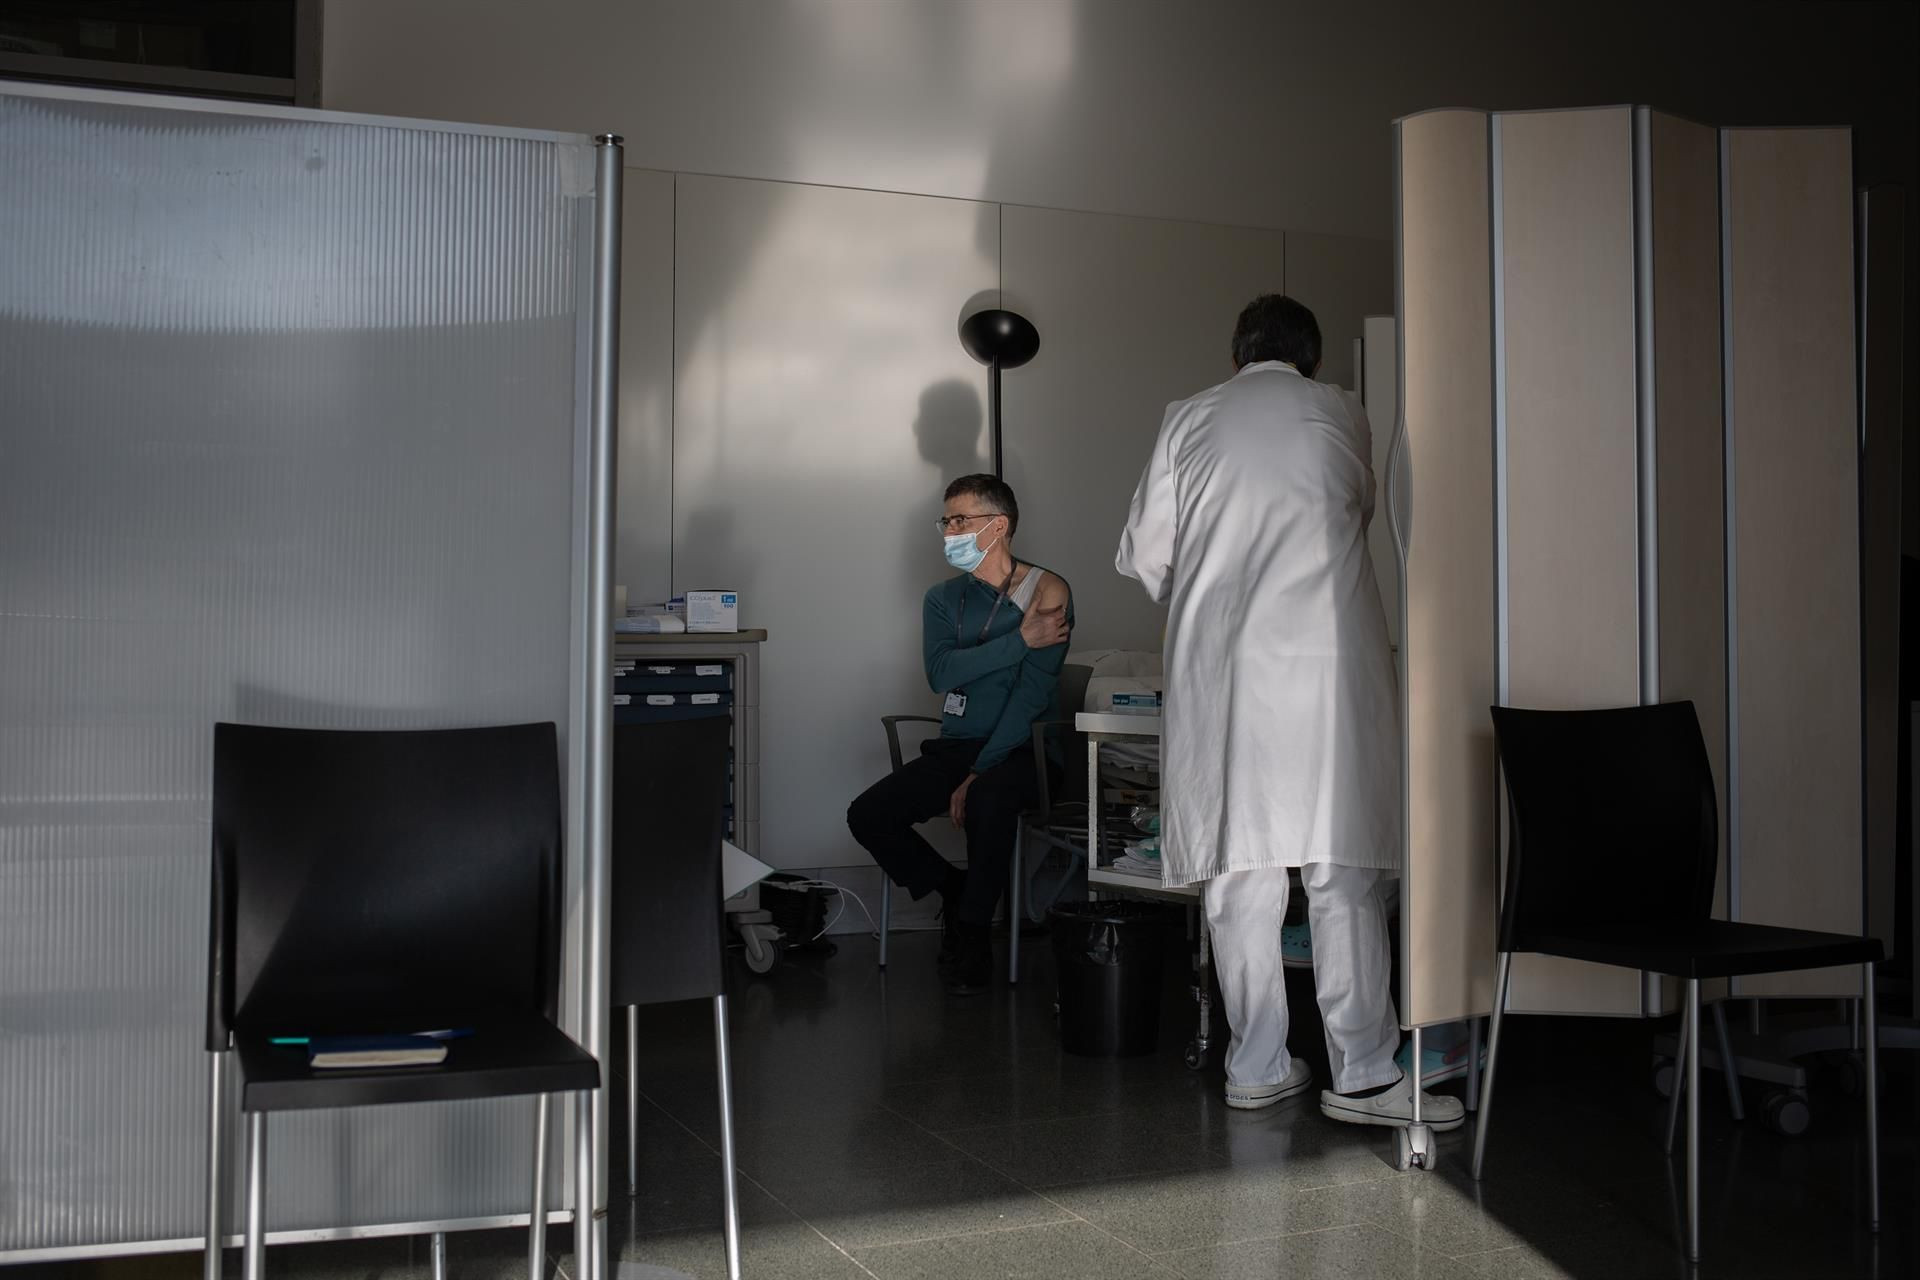 Una enfermera vacuna a un profesional sanitario con la vacuna de Pfizer-BioNtech contra el COVID-19 en el Hospital de la Santa Creu i Sant Pau de Barcelona / David Zorrakino - Europa Press